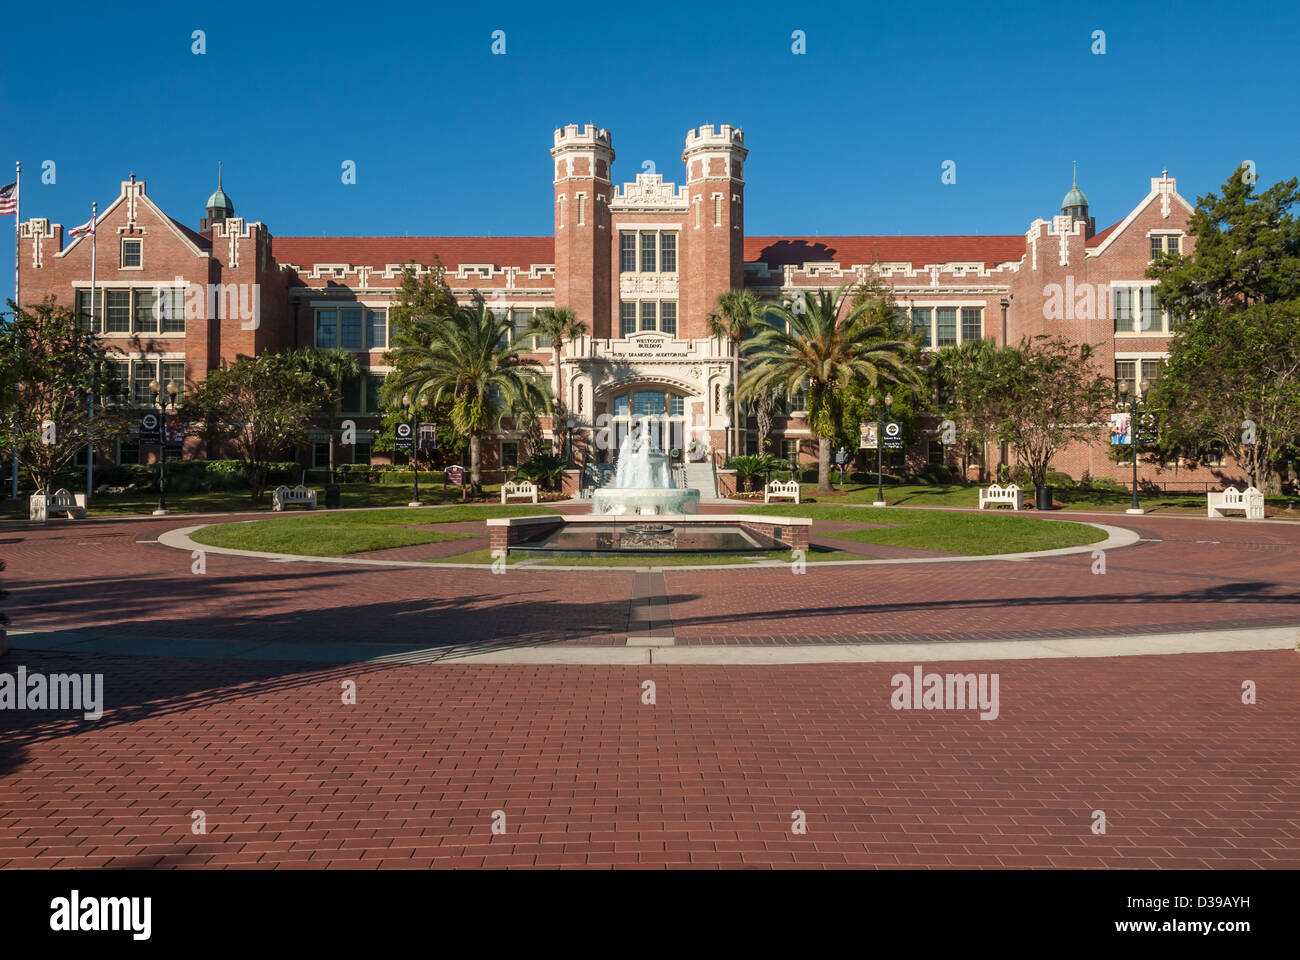 Le bâtiment et la fontaine de Westcott, révérés par l'Université d'État de Floride, sont exposés au soleil du matin. Tallahassee, Floride. (ÉTATS-UNIS) Banque D'Images